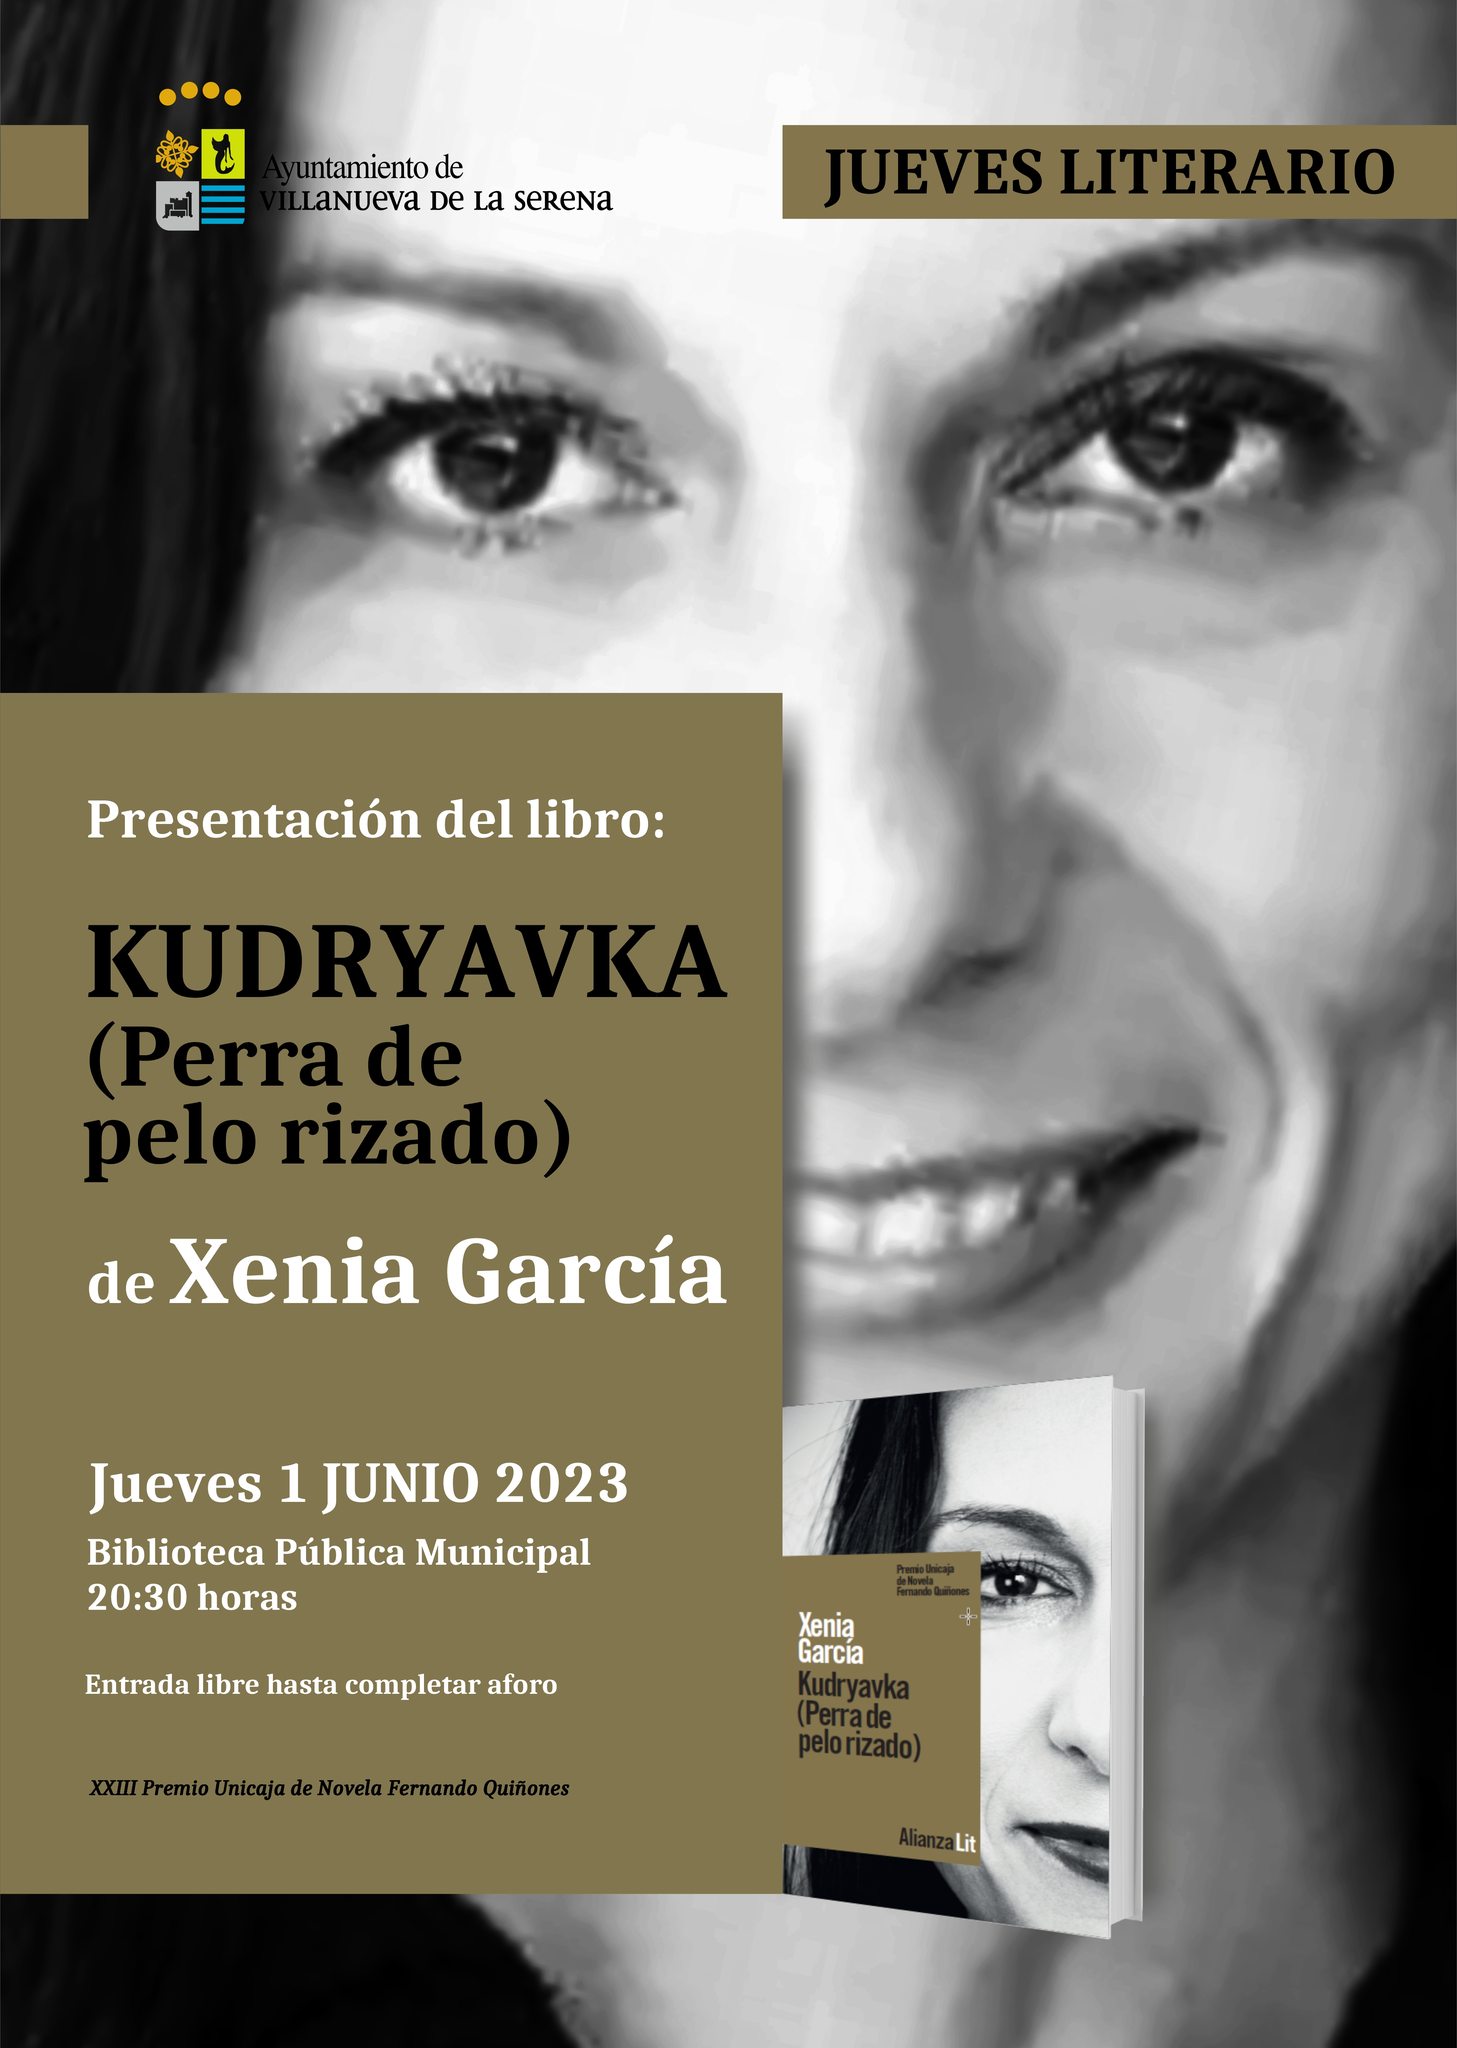 Jueves Literario. Presentación del libro: 'Kudryavka. Perra de pelo rizado' de Xenia García